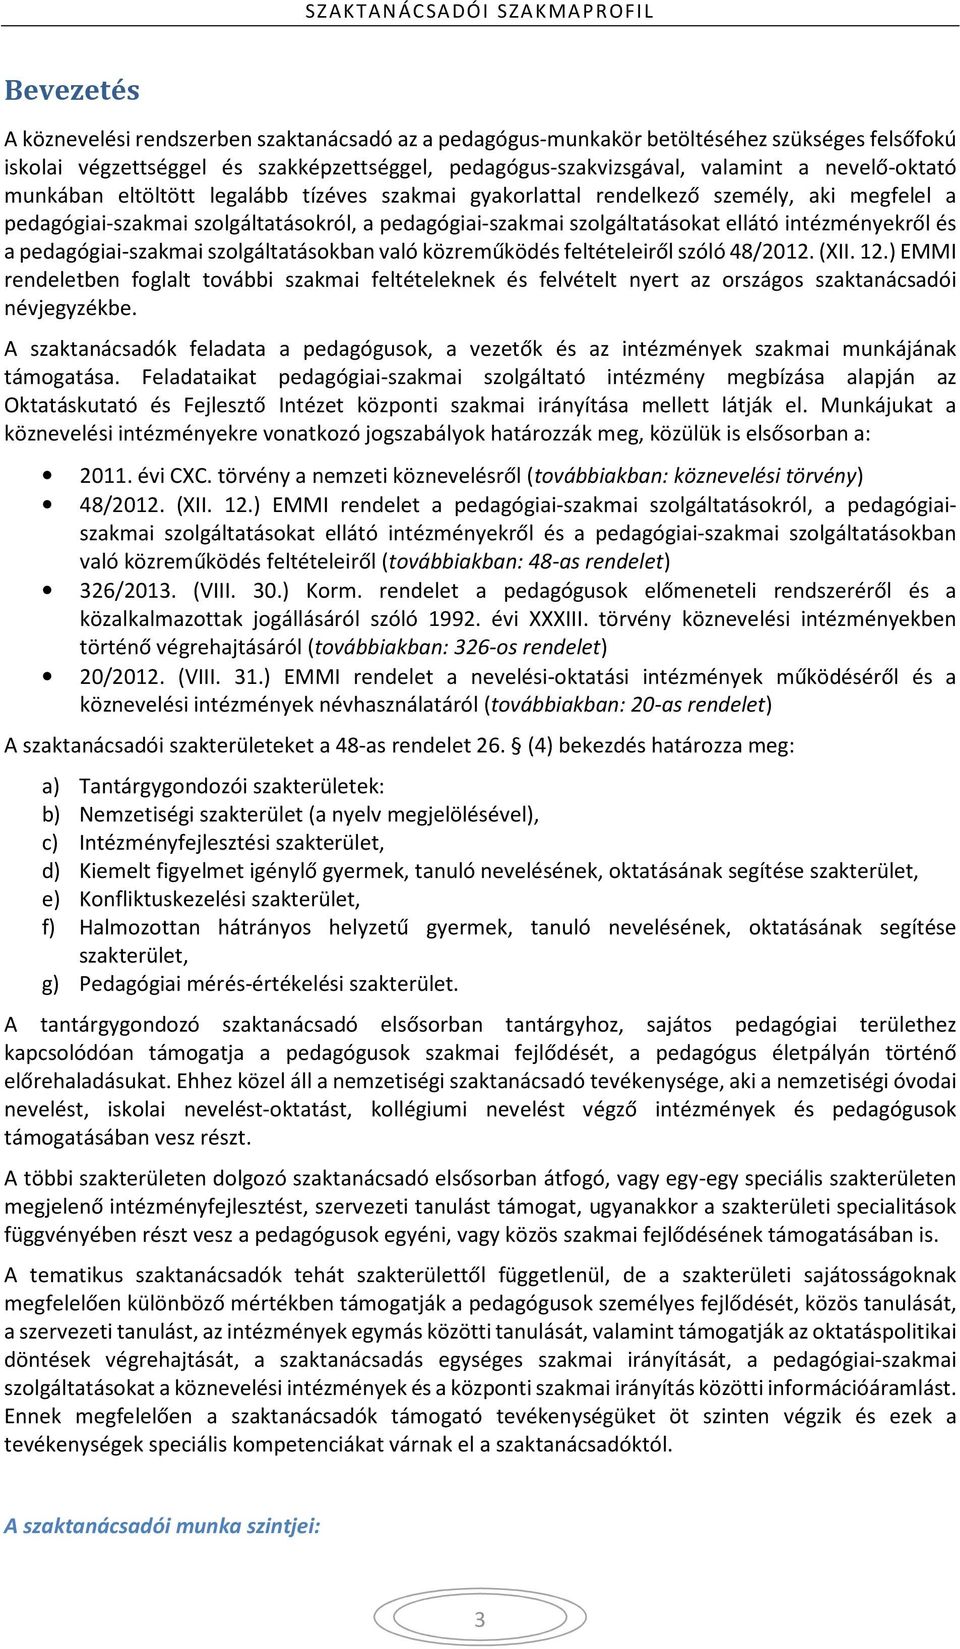 intézményekről és a pedagógiai-szakmai szolgáltatásokban való közreműködés feltételeiről szóló 48/2012. (XII. 12.